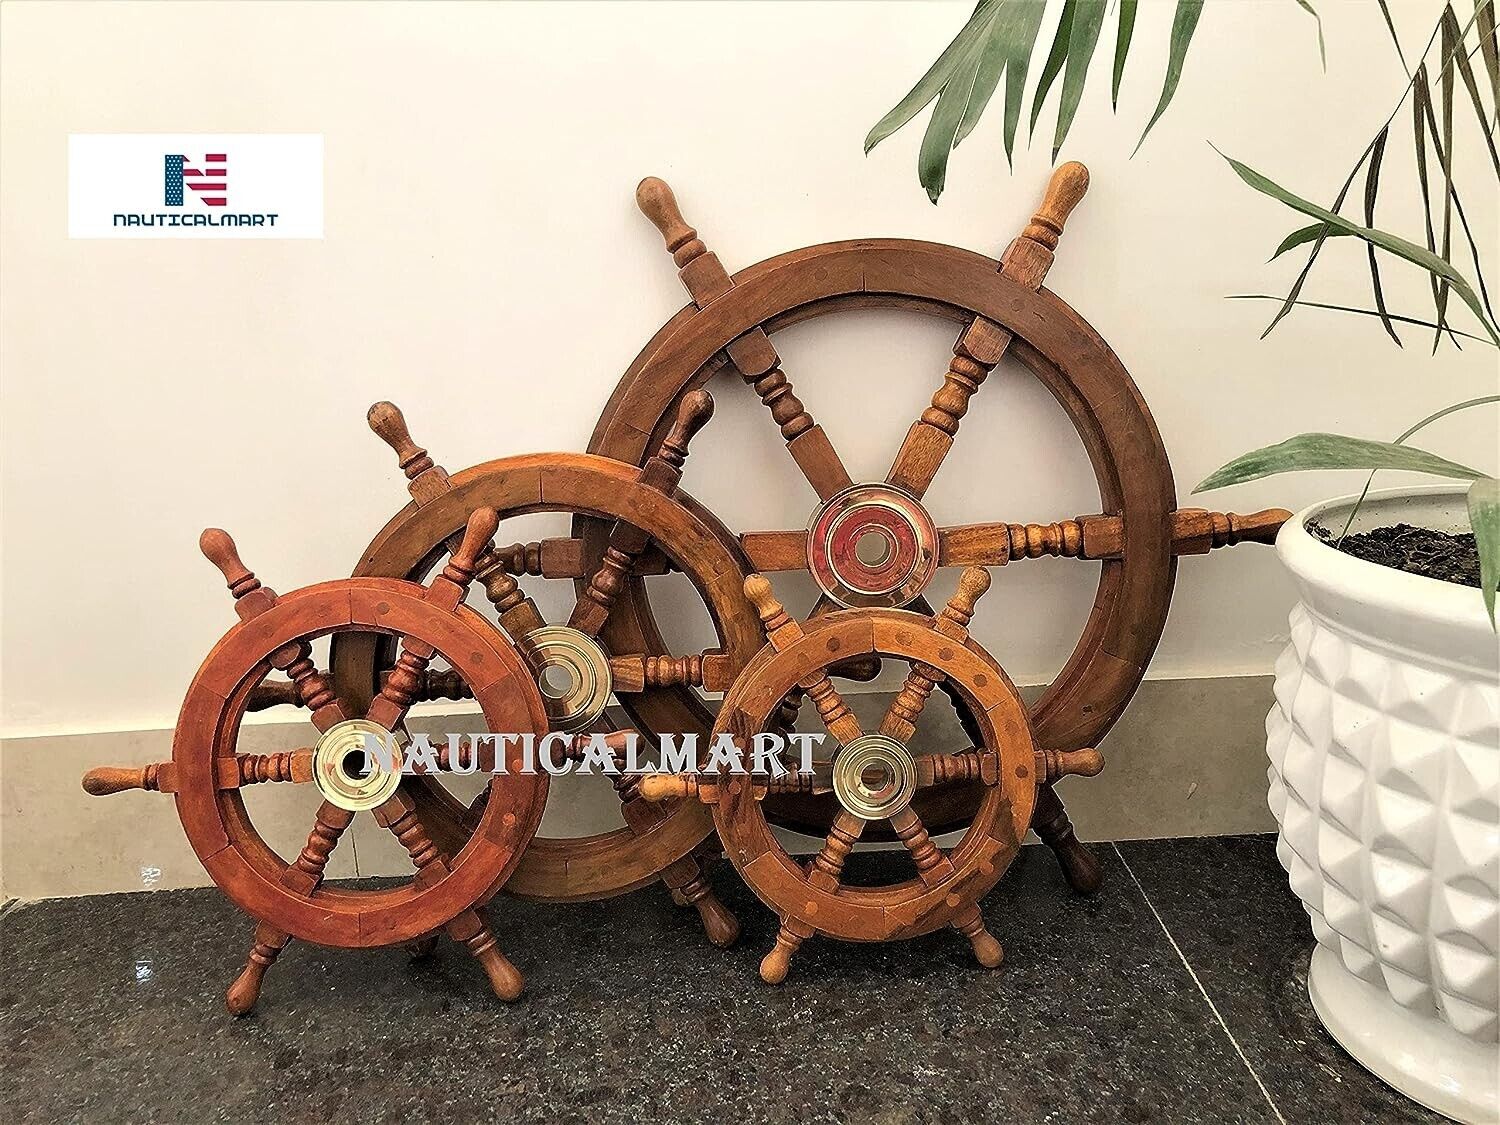 NauticalMart Sailors Special Wooden Ship Wheel, 15